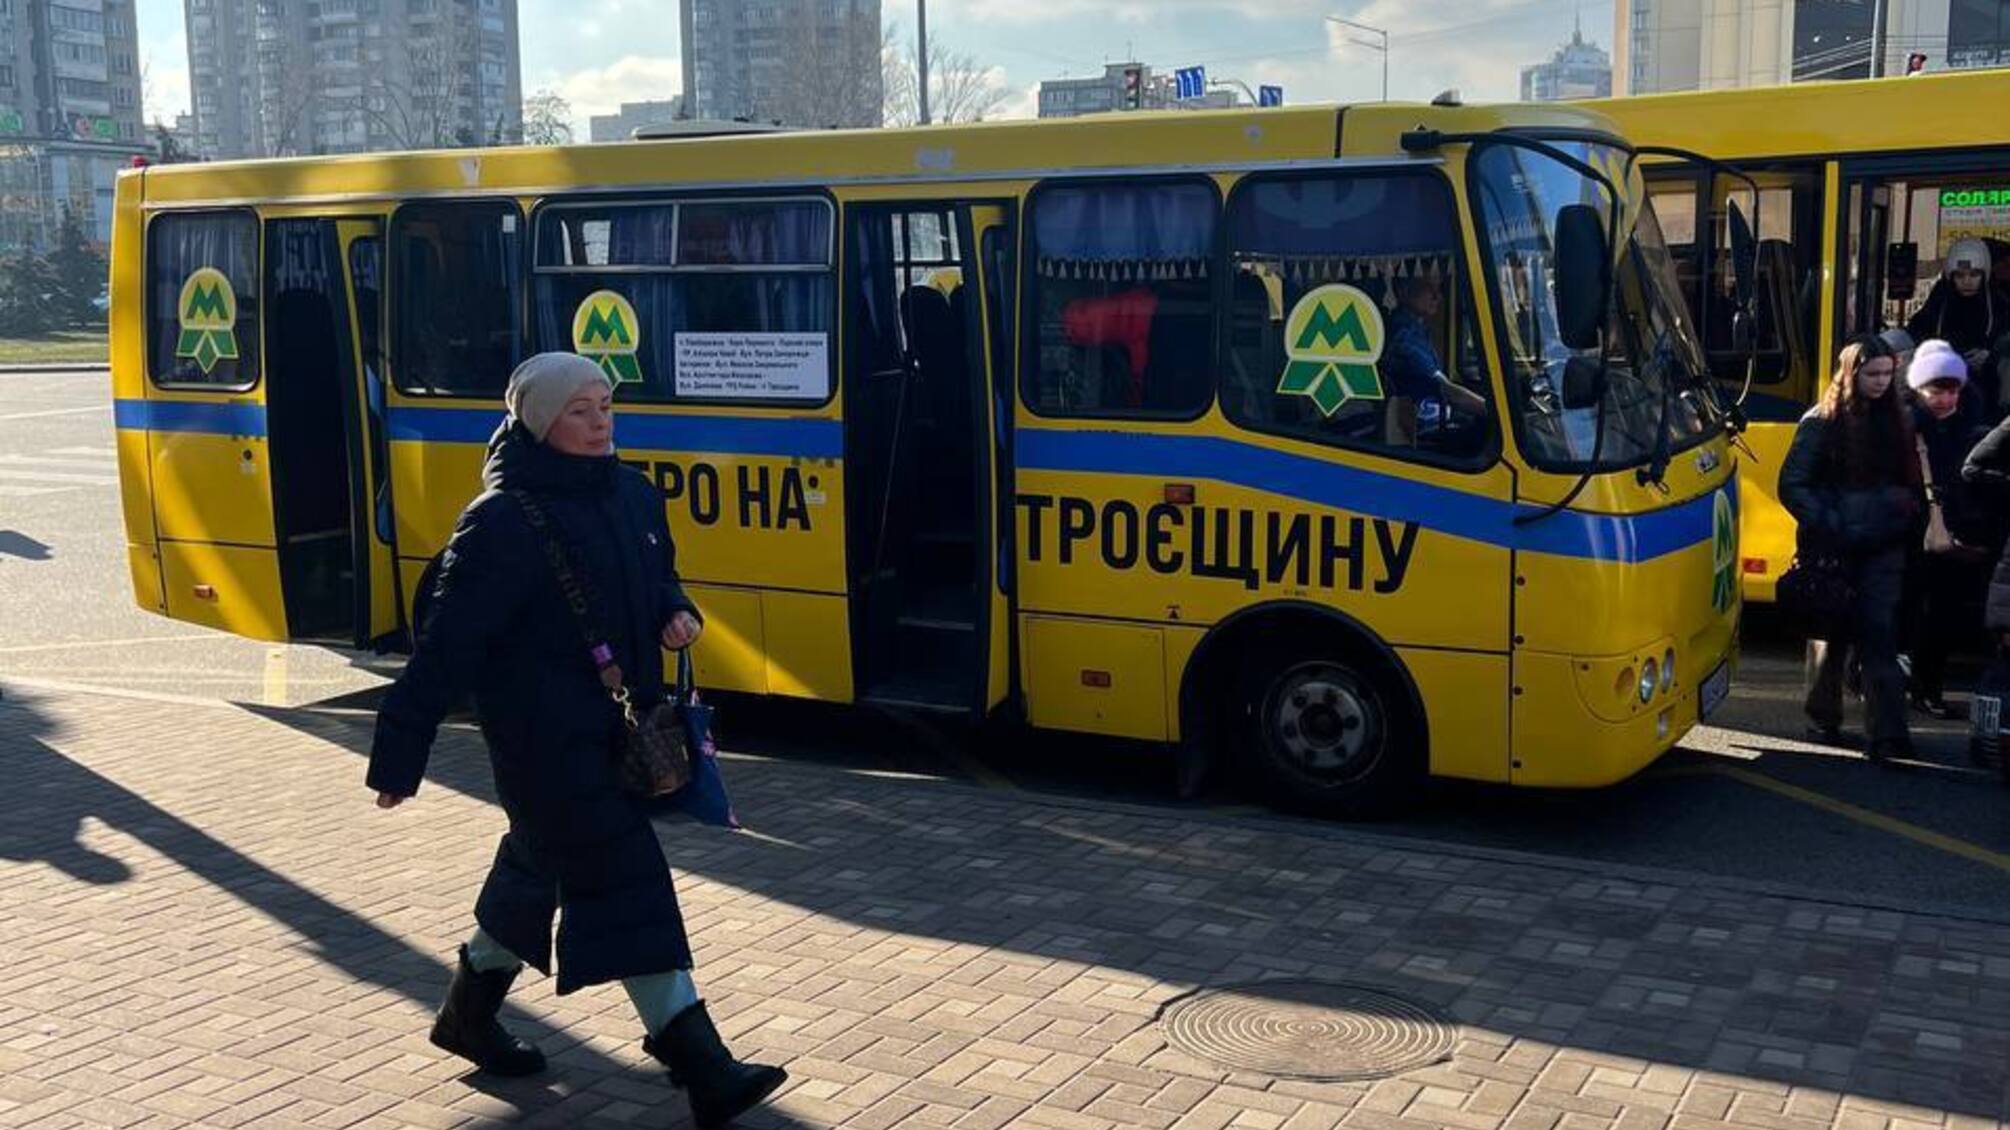 В Киеве запустили 'метро на Троещину'?